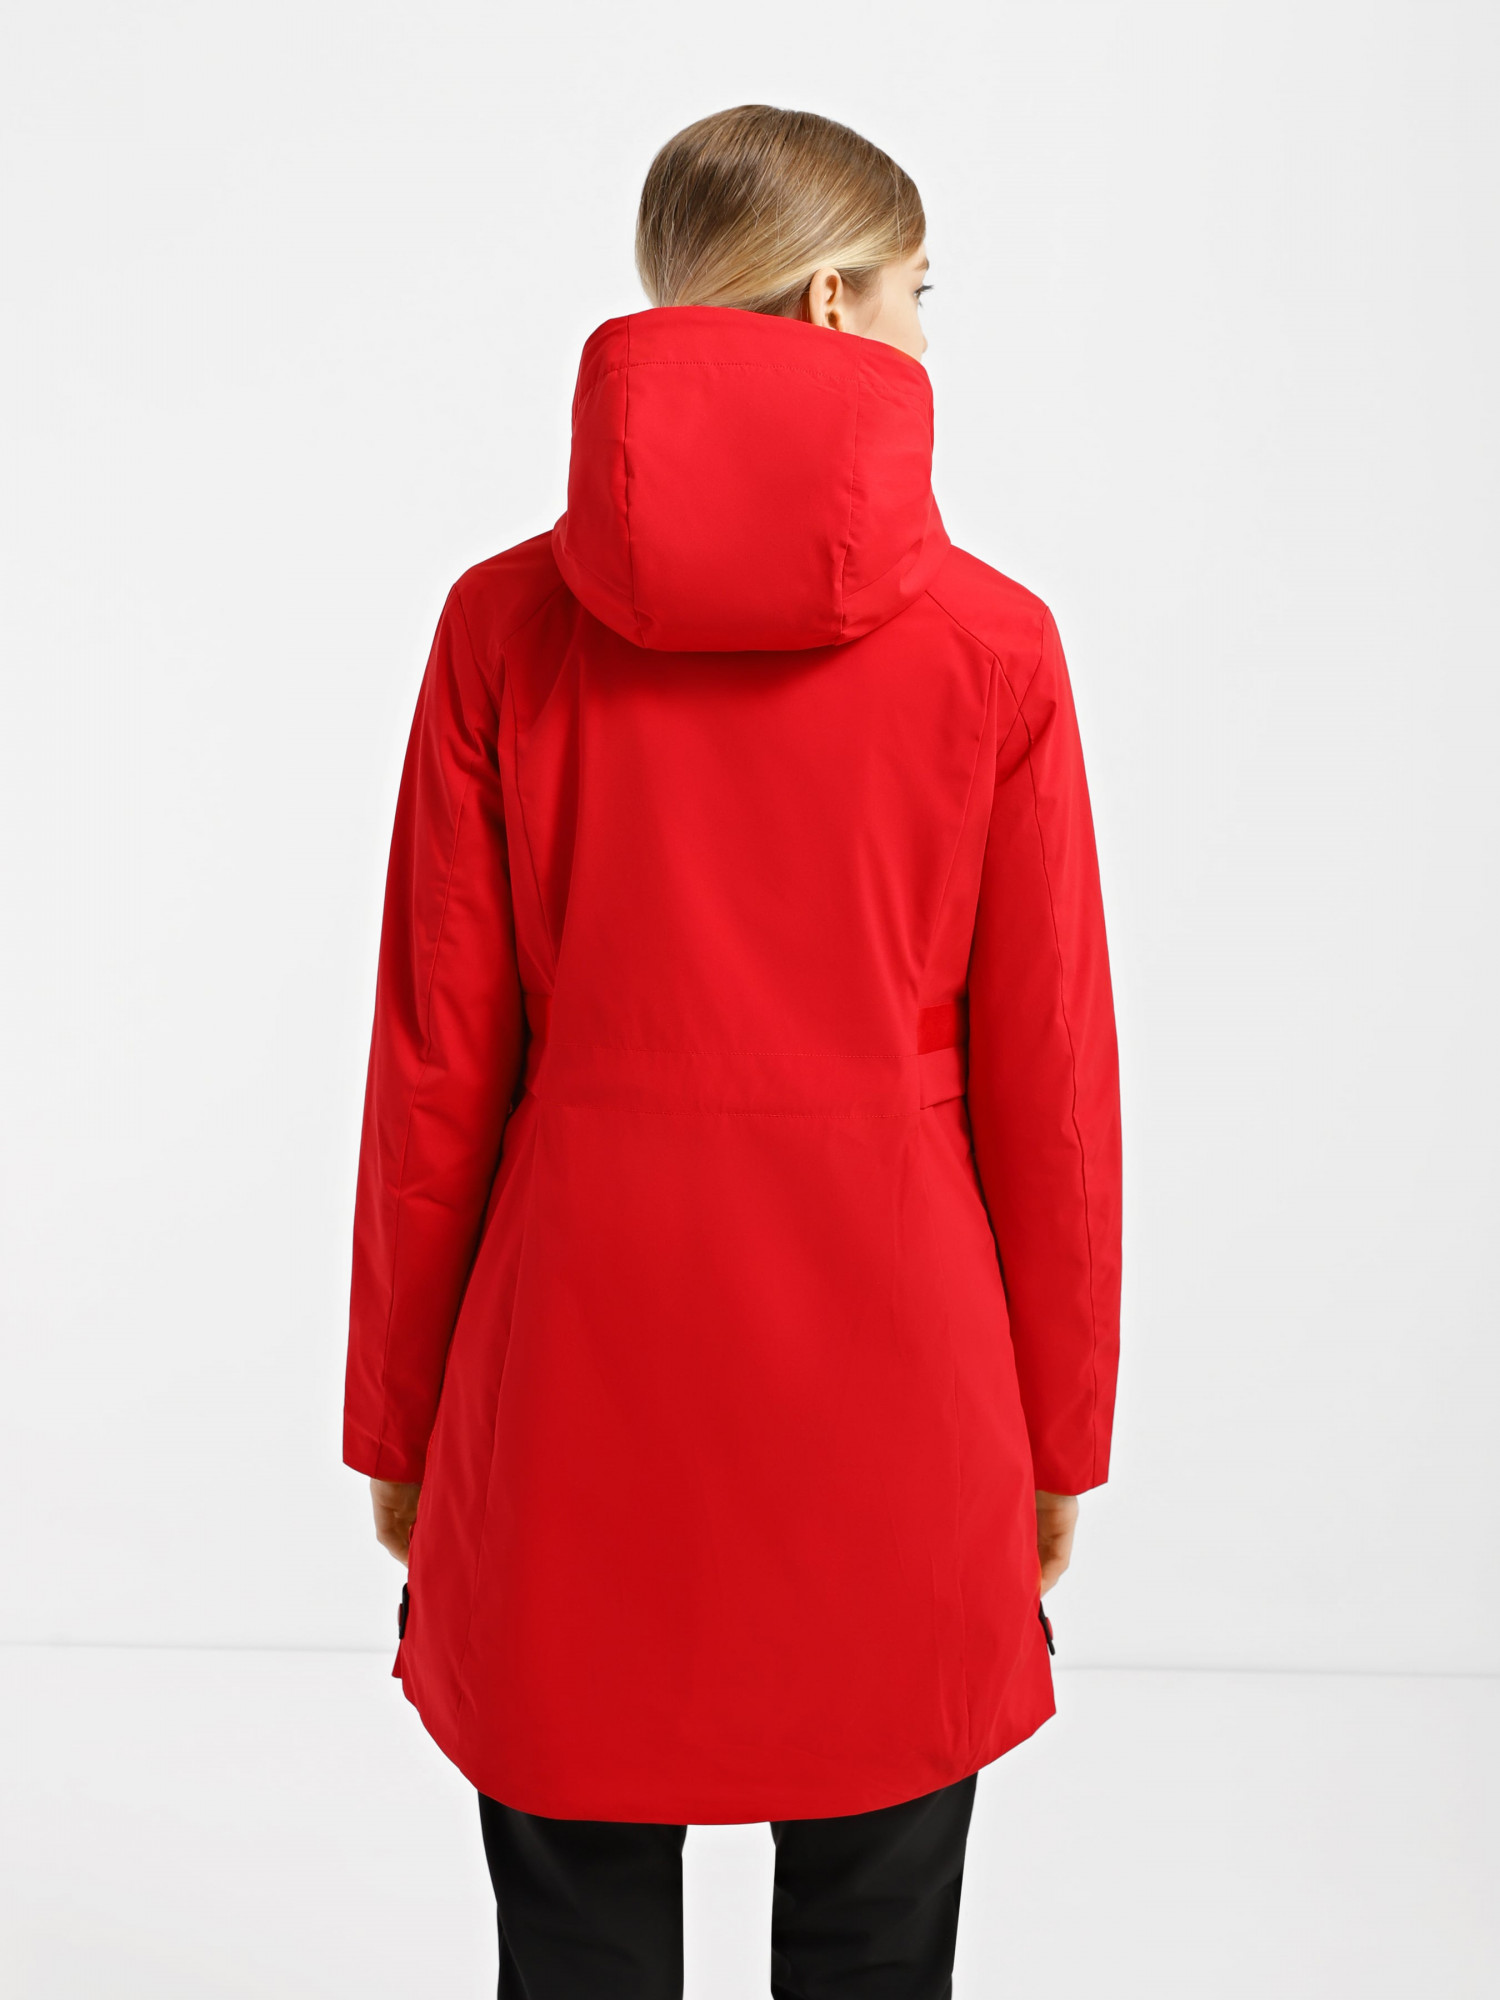 Куртка женская Evoids Bellatrix красная 622604-650 изображение 3